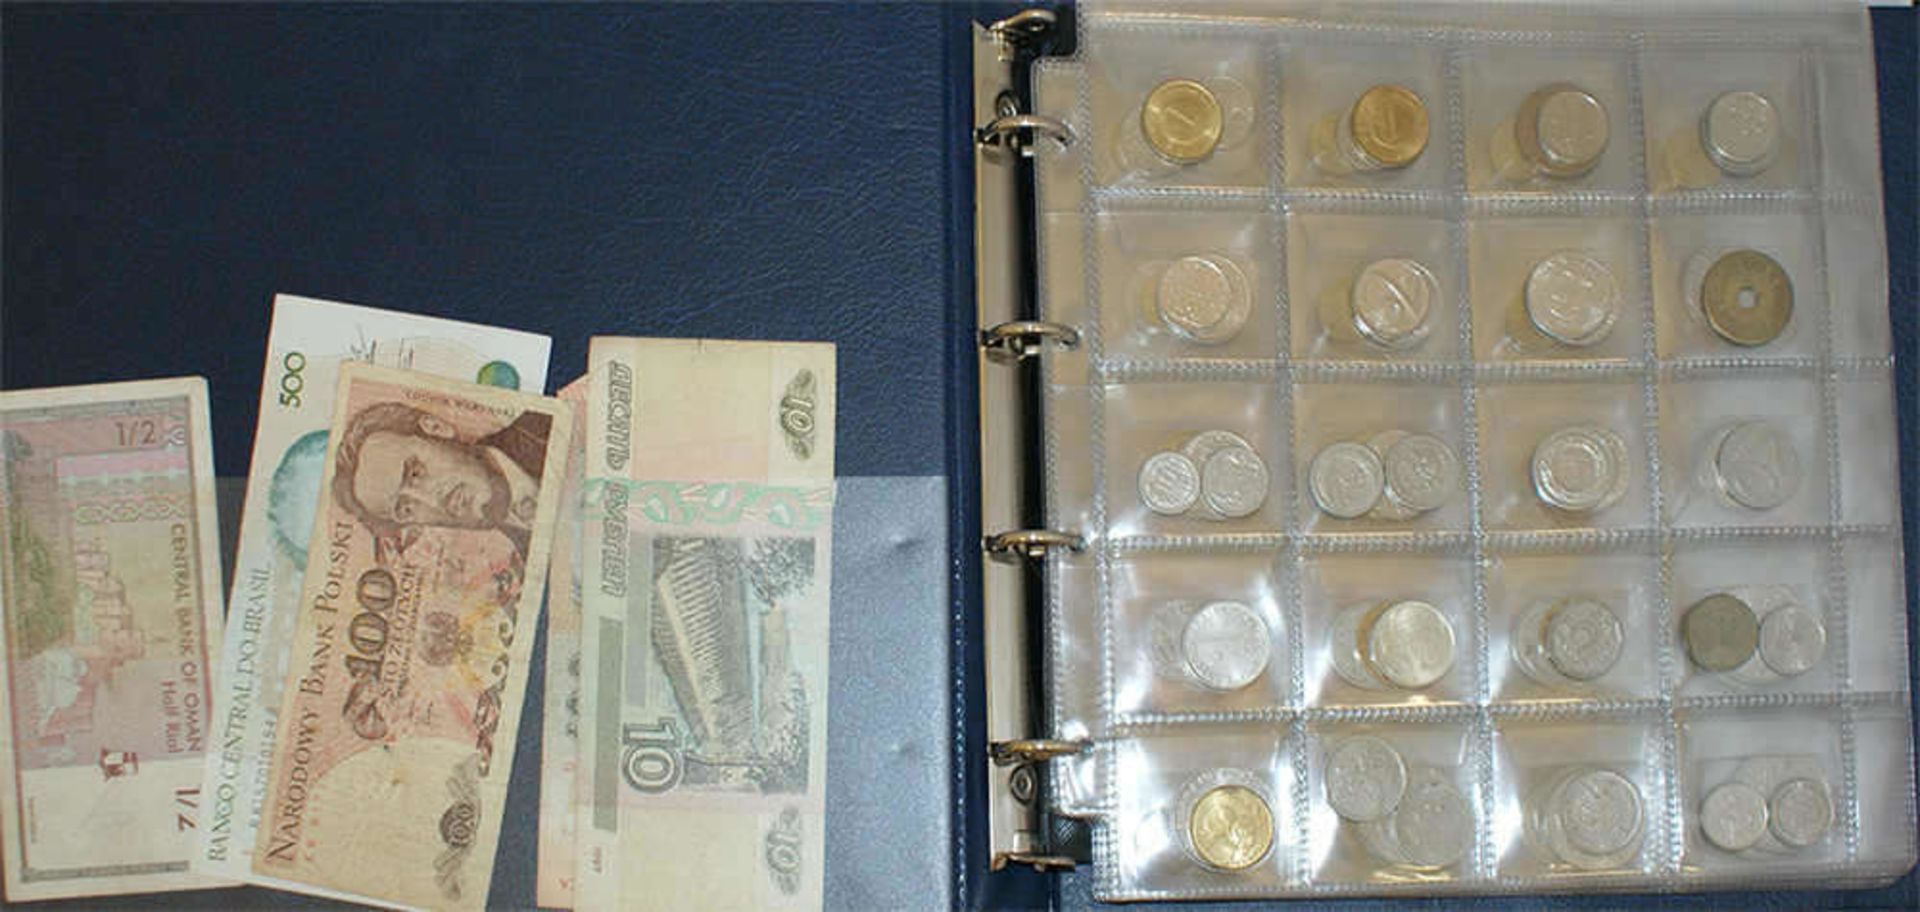 Münzalbum mit Umlaufmünzen, dabei z.B. Frankreich, USA, England, etc. Bitte besichtigen. - Bild 2 aus 3